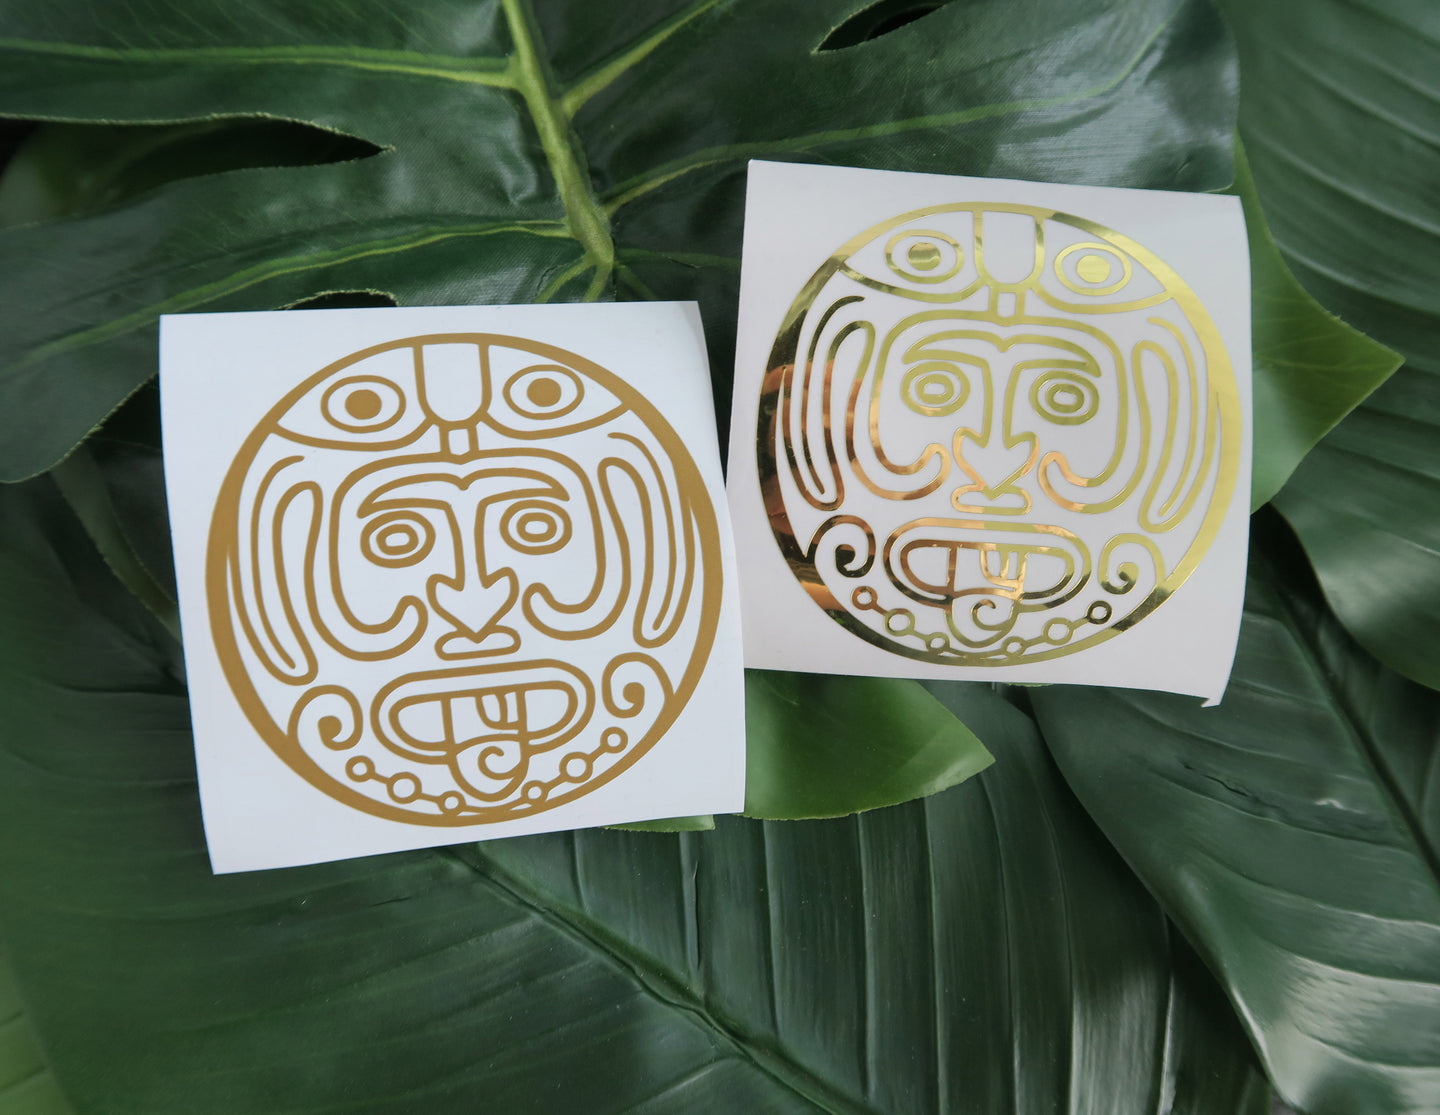 Mayan Calendar Face - Decal/Vinyl Sticker